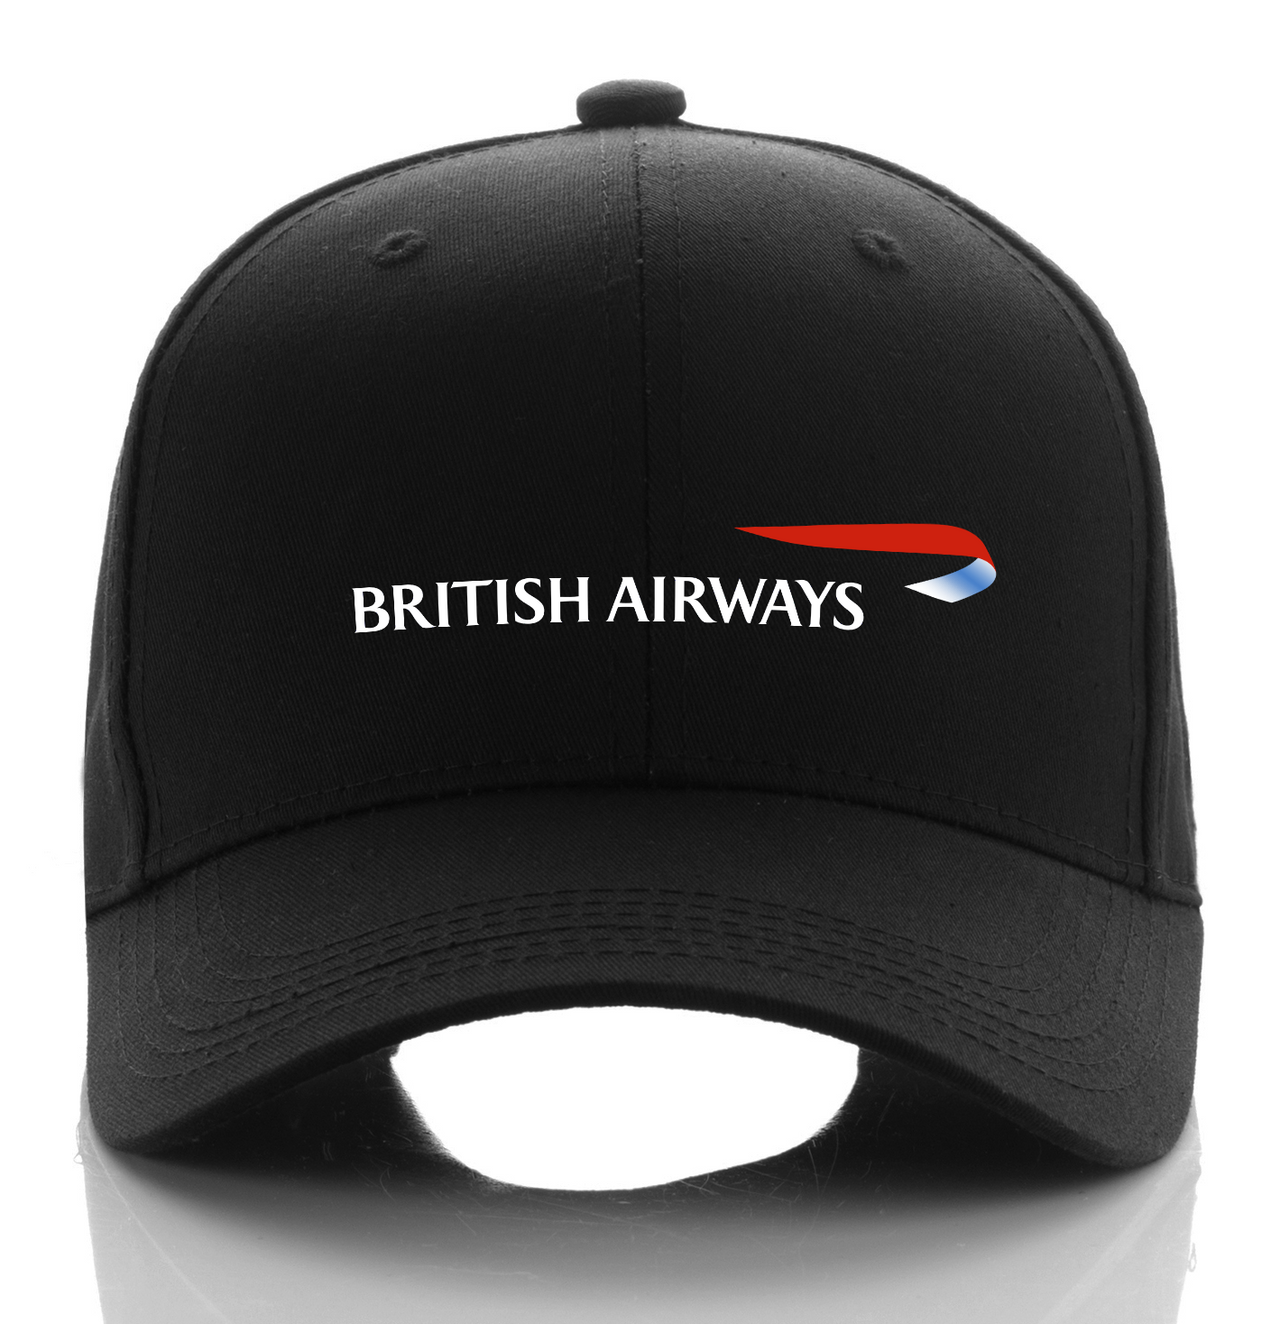 BRITISH AIRLINE DESIGNED CAP